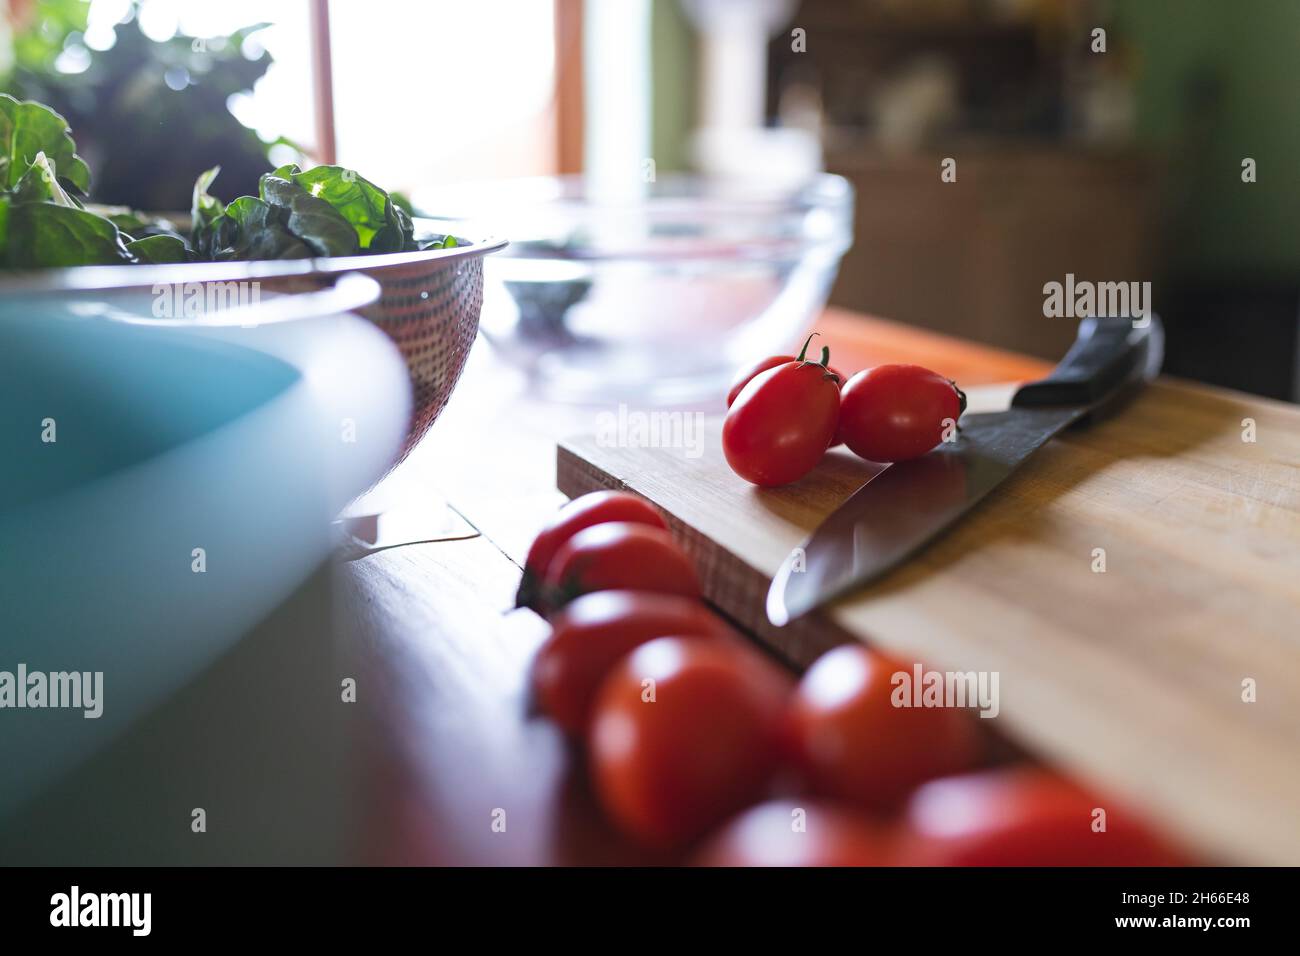 Primo piano di pomodori rossi freschi con coltello su tagliere in legno in cucina Foto Stock